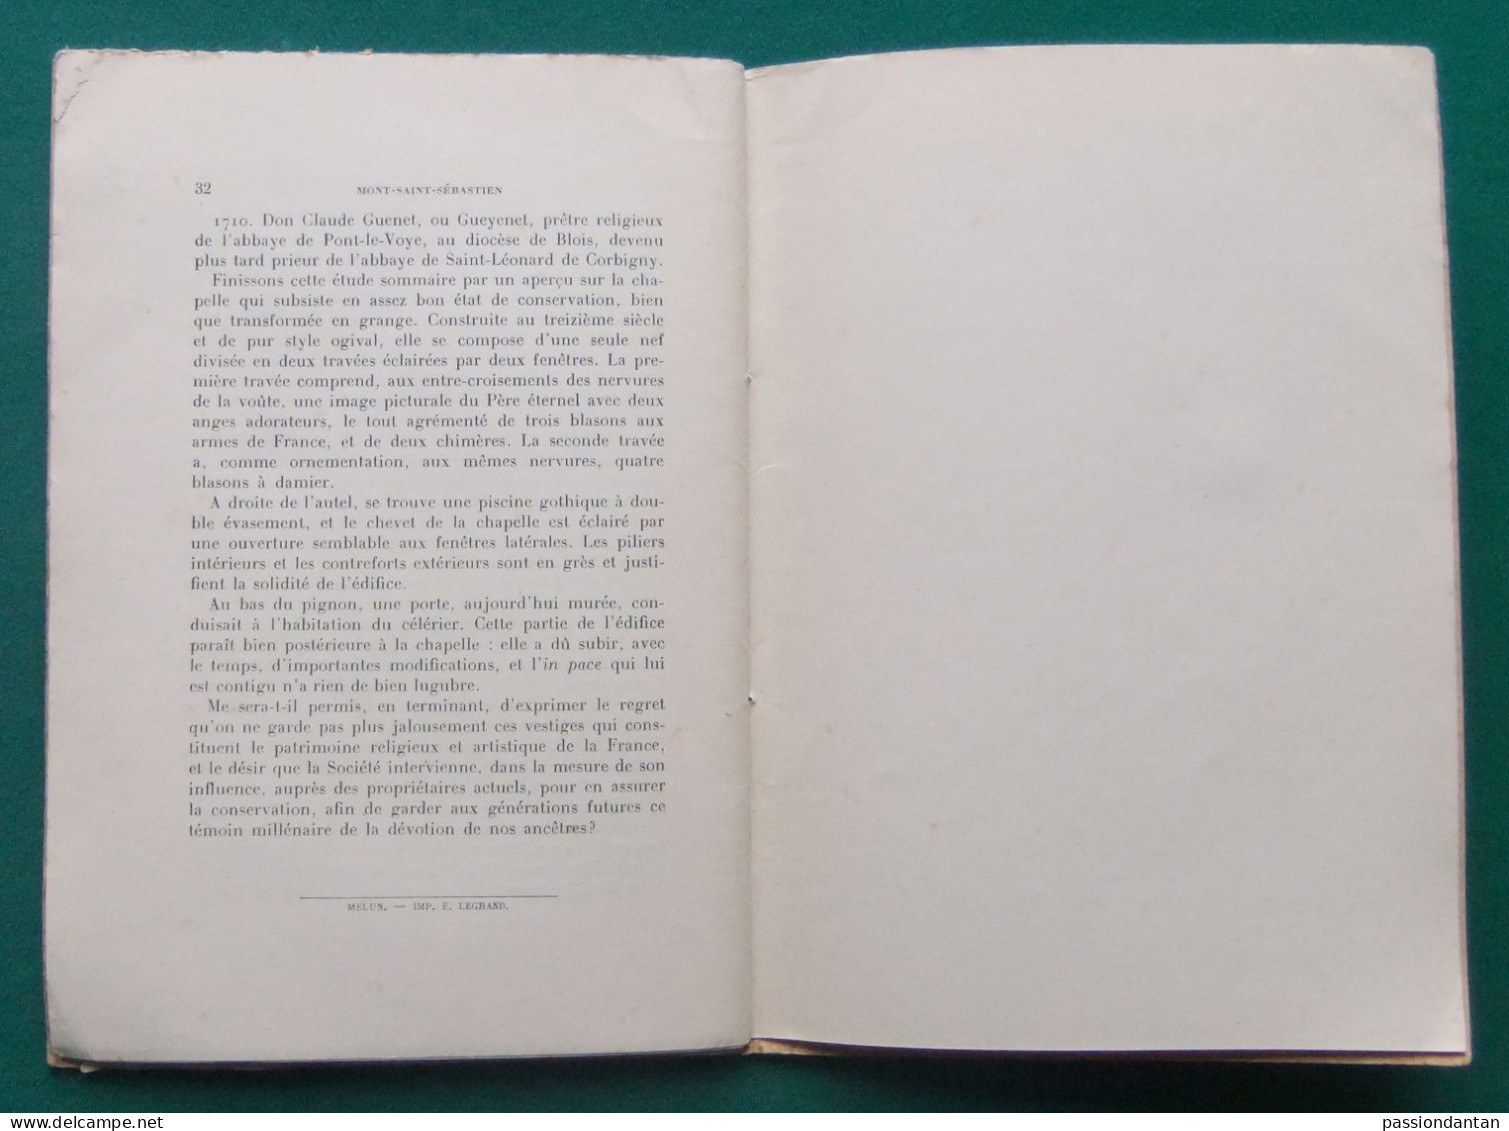 Livret De A. Duchein - Soignolles Sur Yères Et Mont Saint-Sébastien - Année 1927 - Ile-de-France